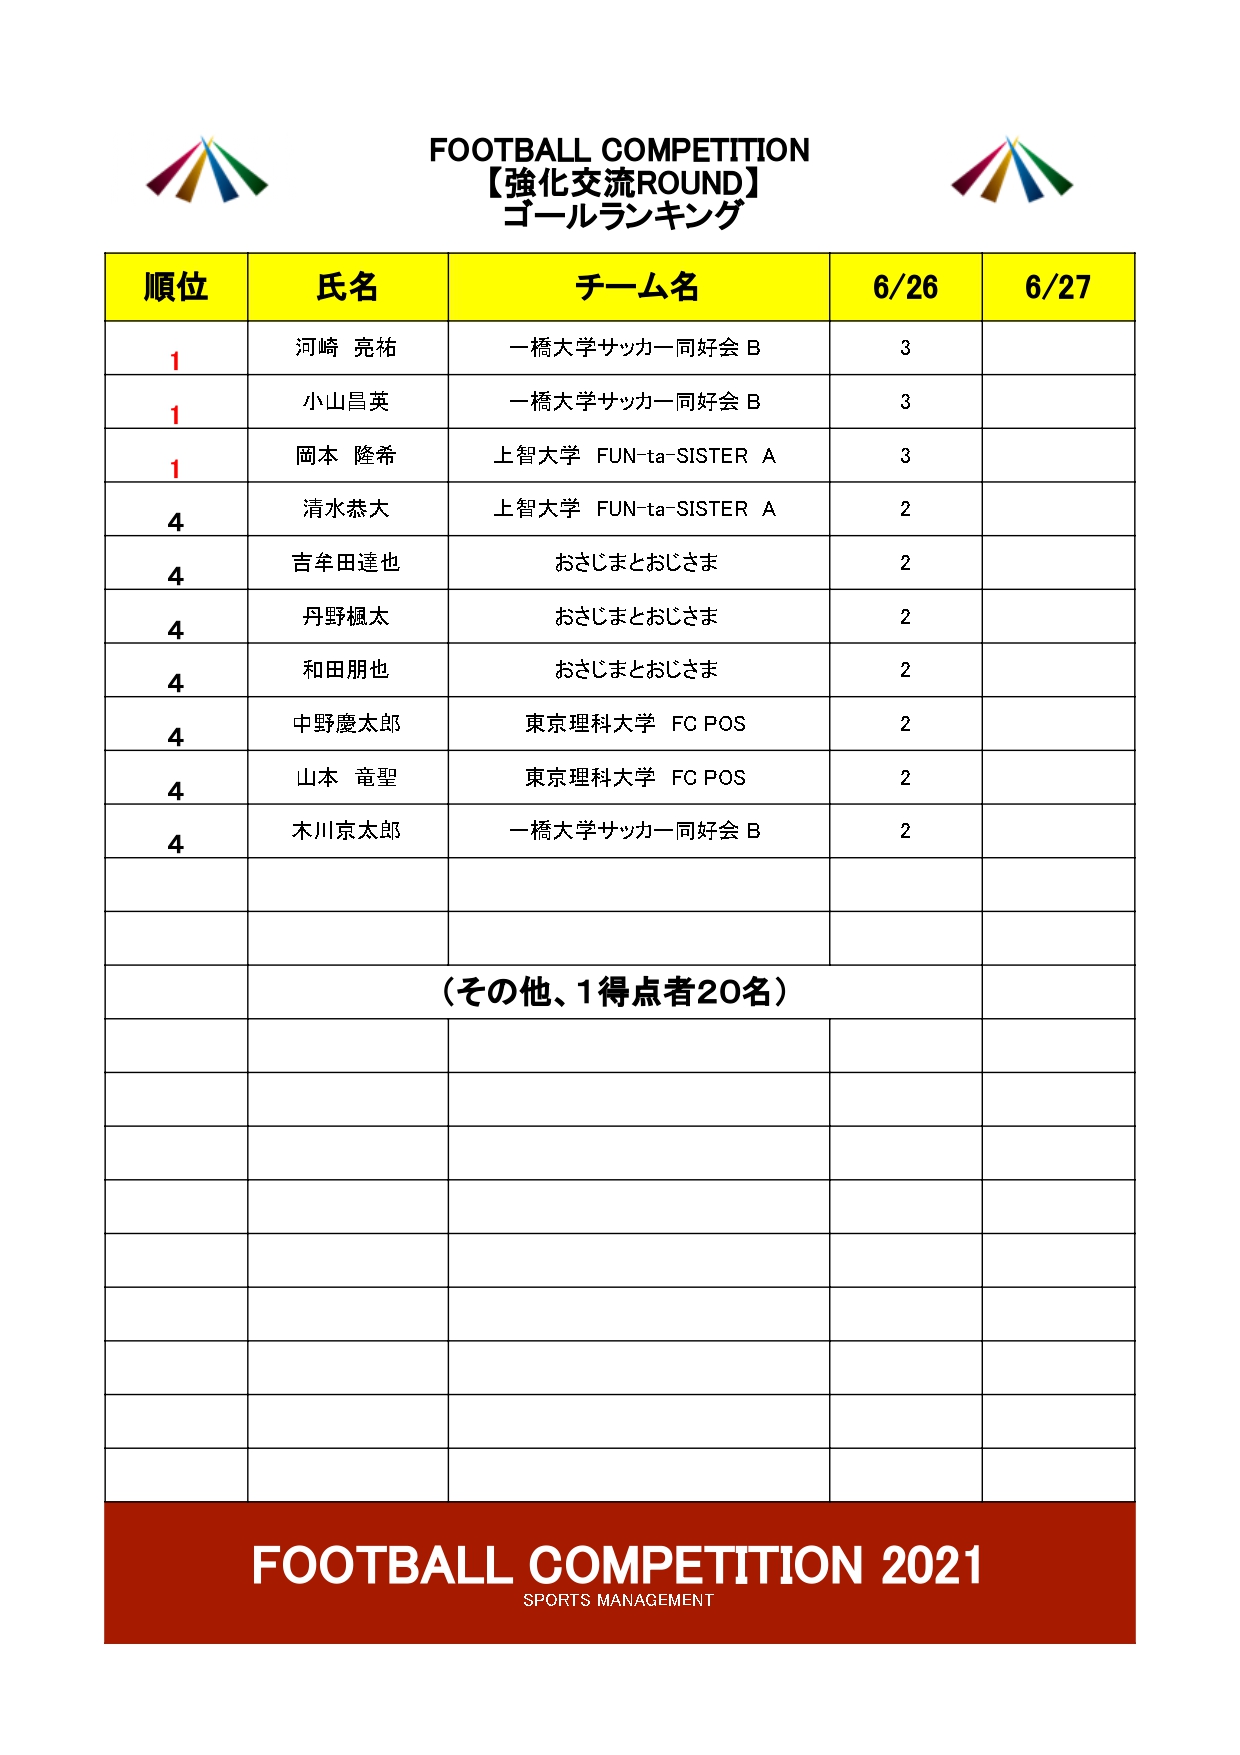 2021/6/26(土)～27(日)　FOOTBALL COMPETITION 2021【強化交流ROUND】波崎 トーナメント表